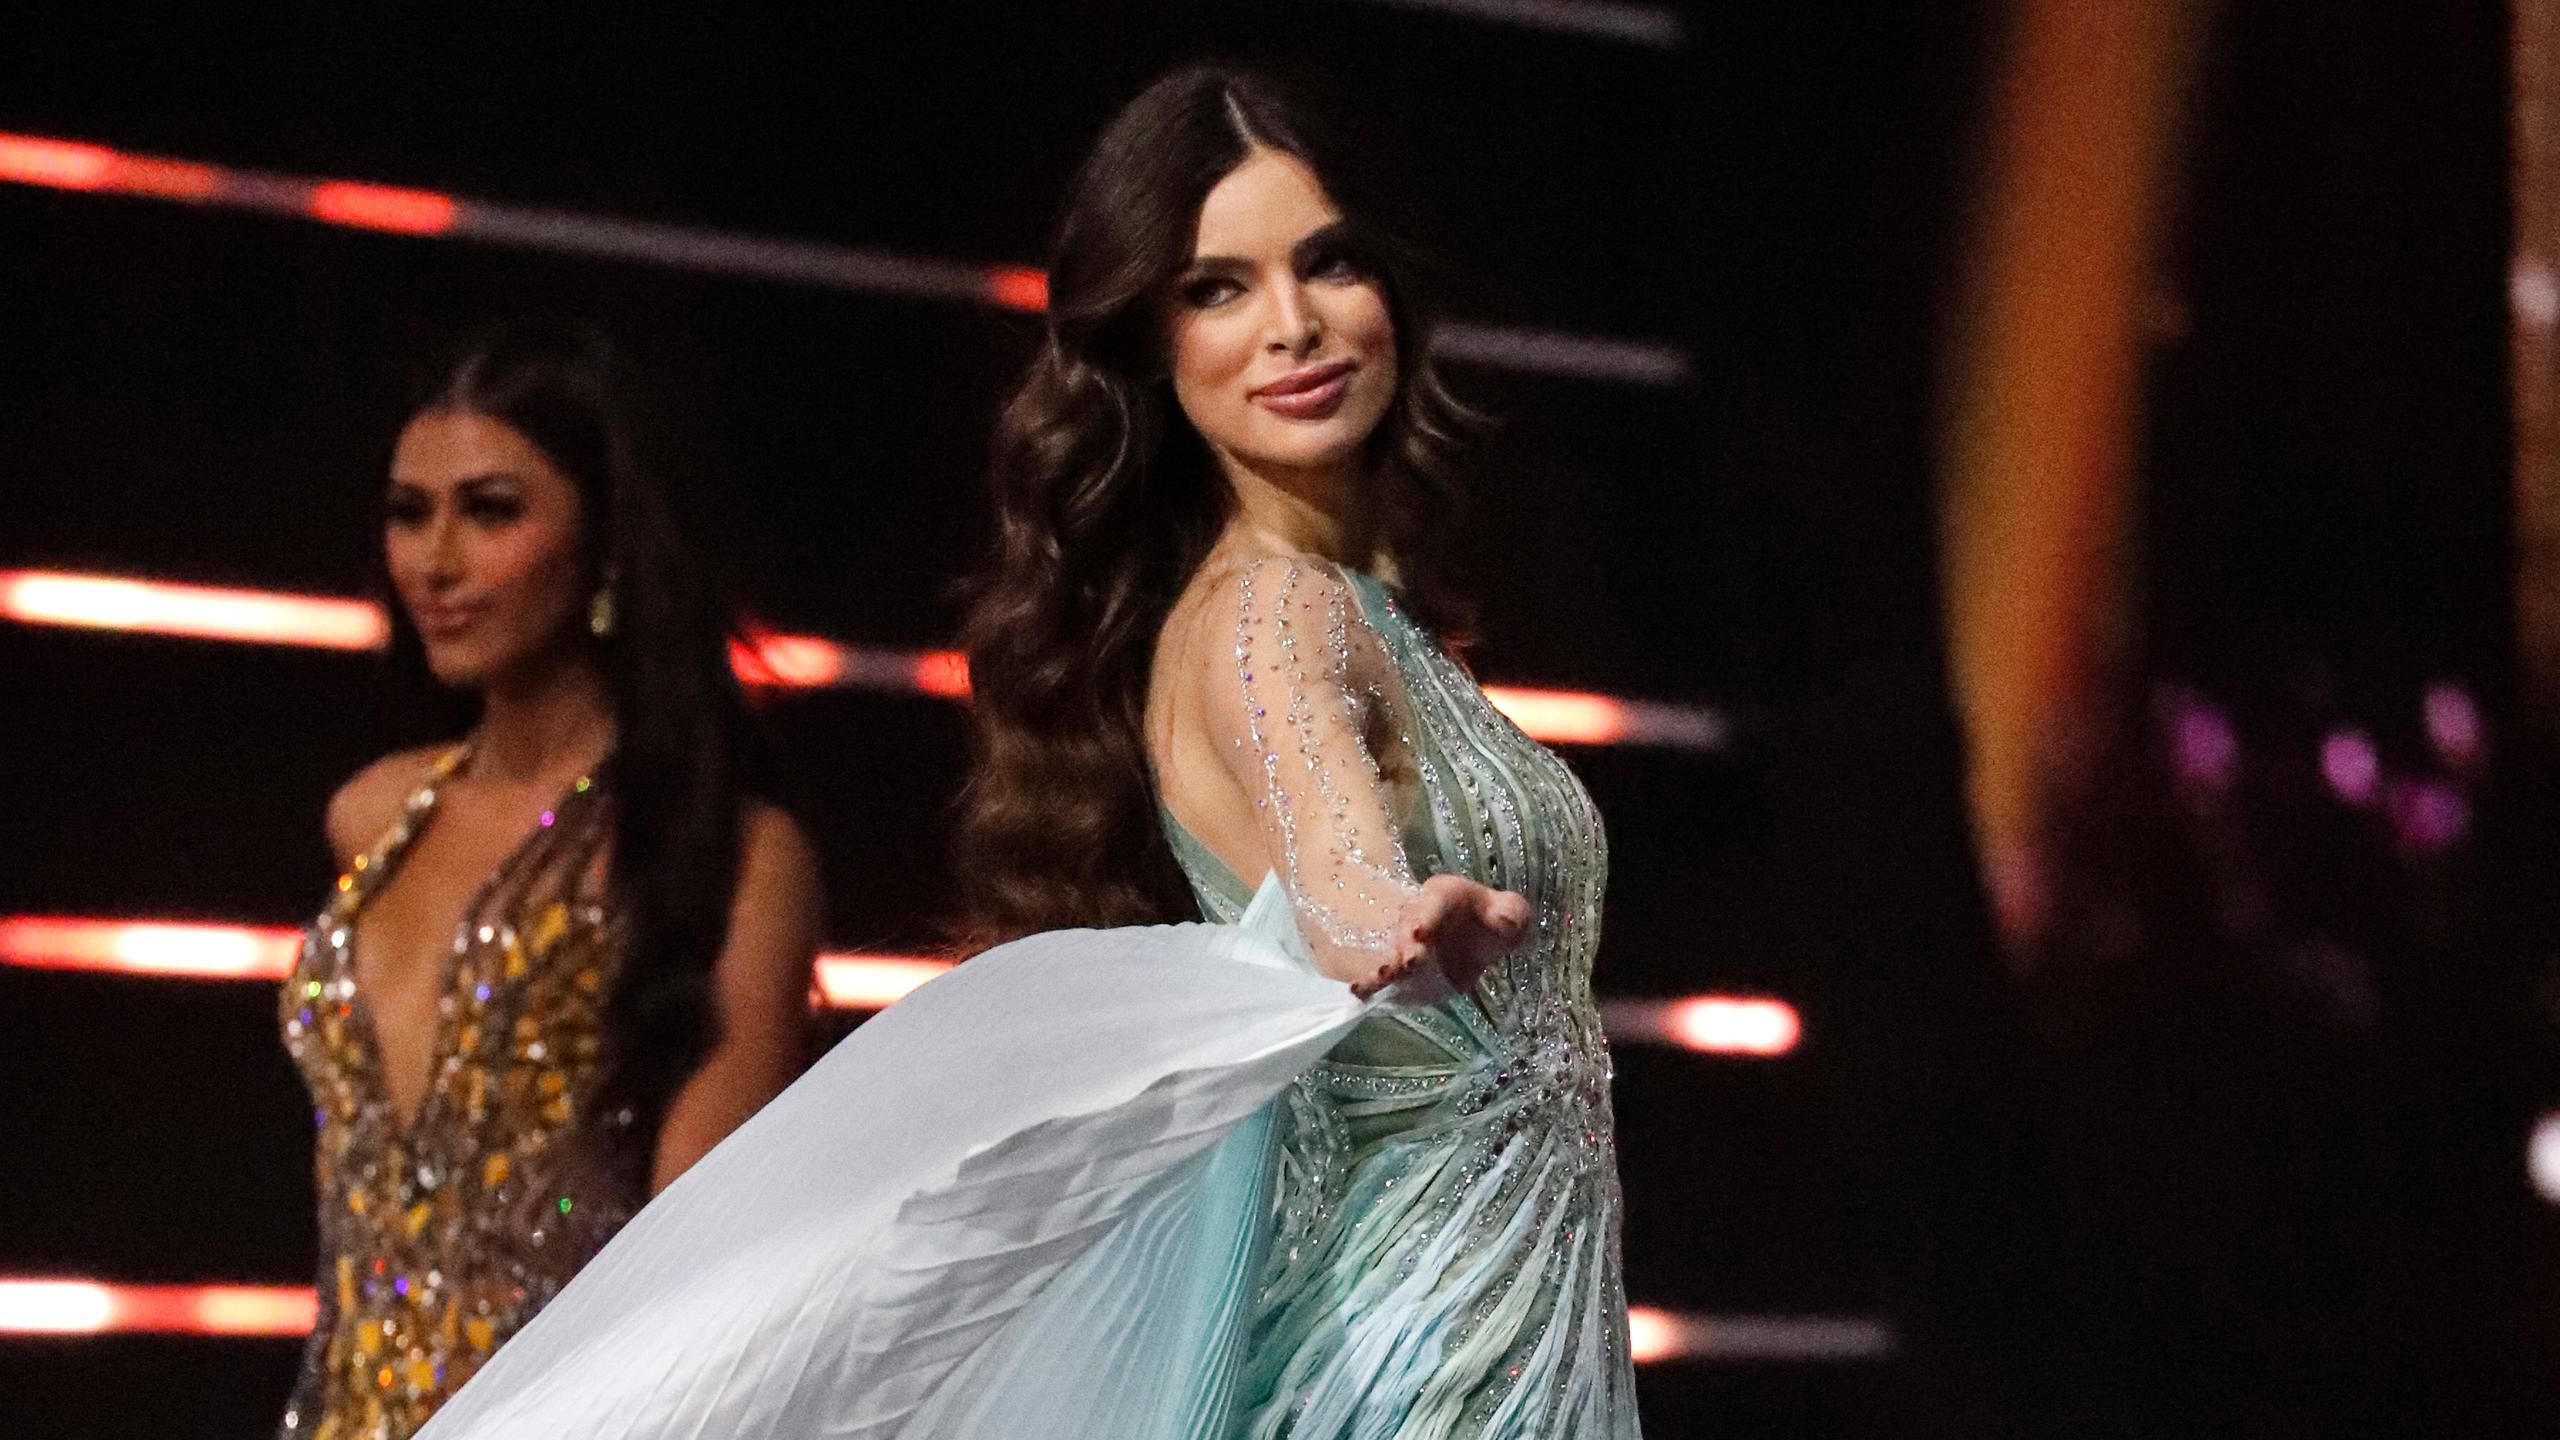 La modelo compitió en representación de Paraguay en Miss Universe 2021.